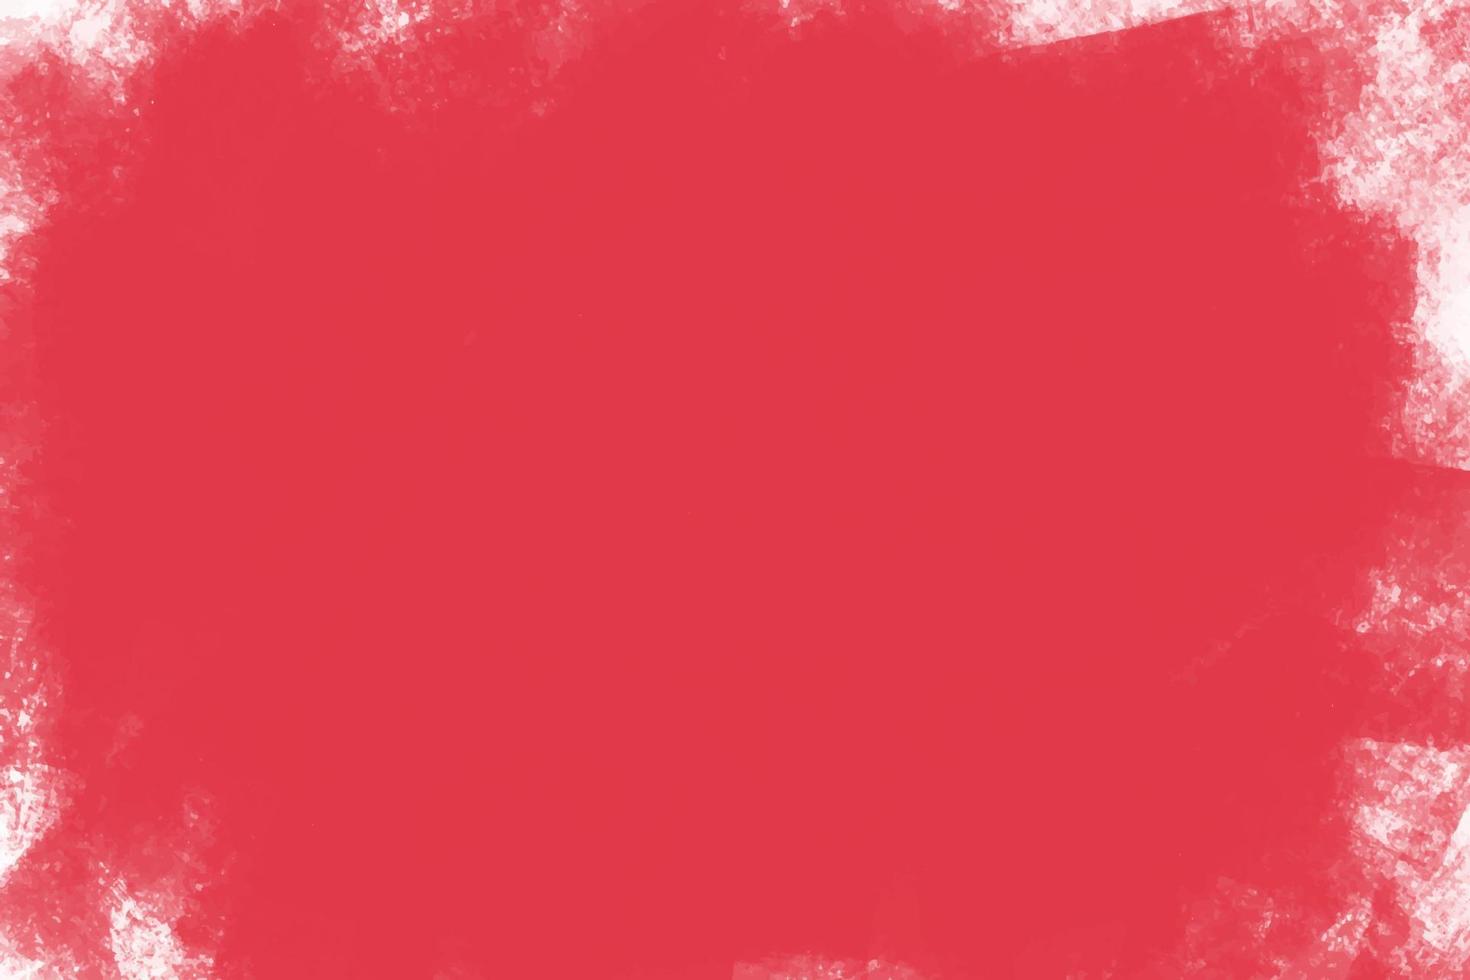 fondo rojo con pinceladas de pintura sobre lienzo, vector